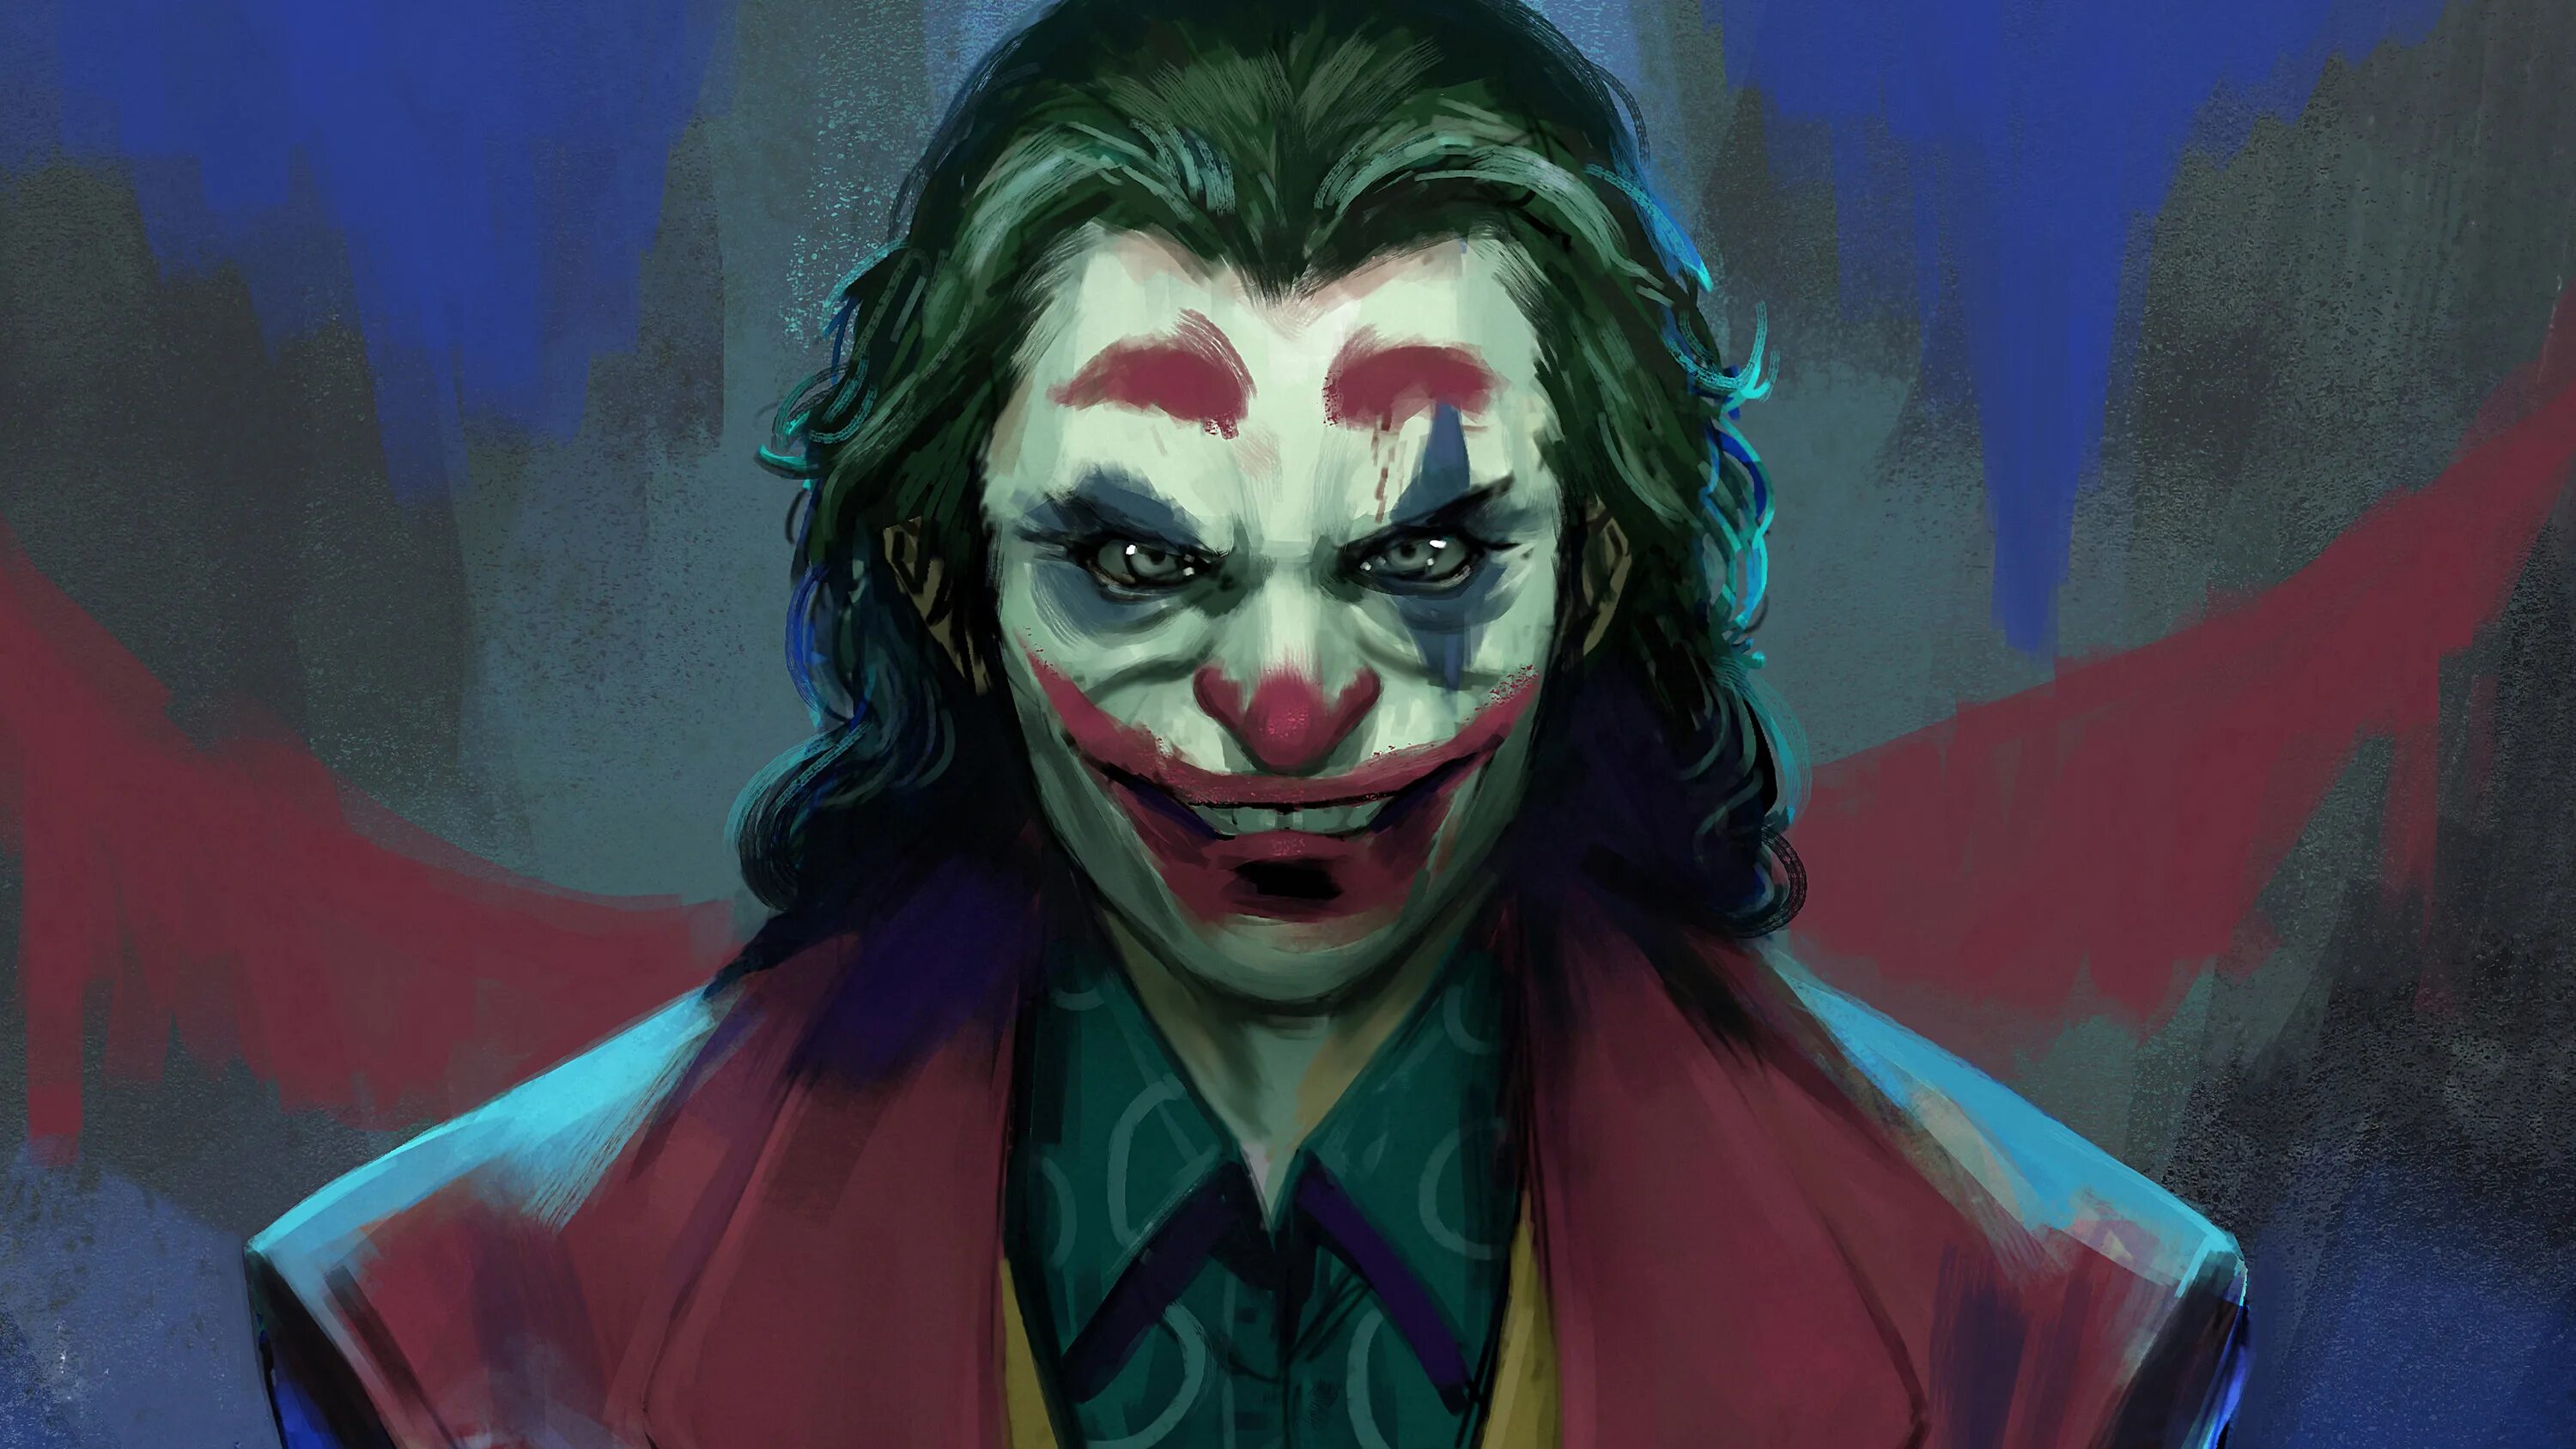 Joker art. Хоакин Феникс Джокер. Джокер 2019 Хоакин Феникс. Джокер Хоакин Феникс арт. Джокер 2019 Хоакин Феникс арт.